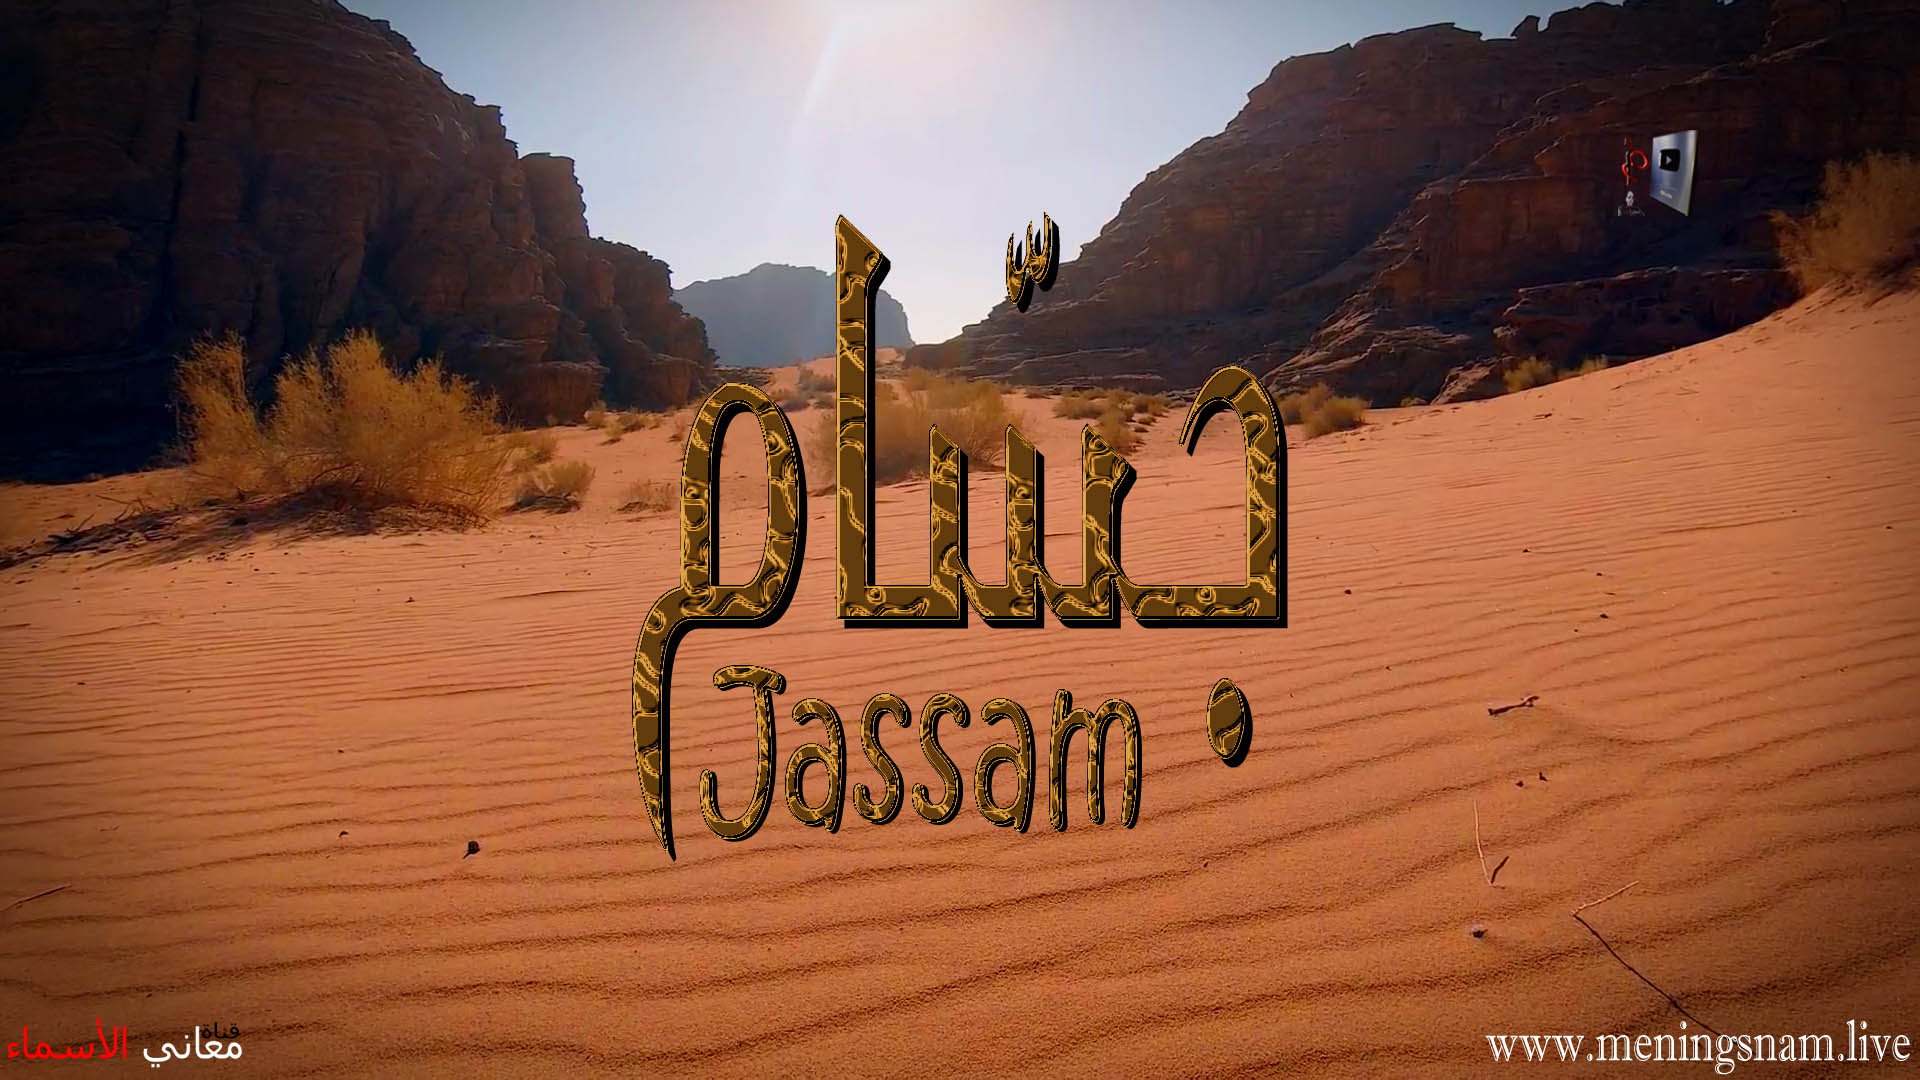 معنى اسم, جسام, وصفات, حامل, هذا الاسم, Jassam,